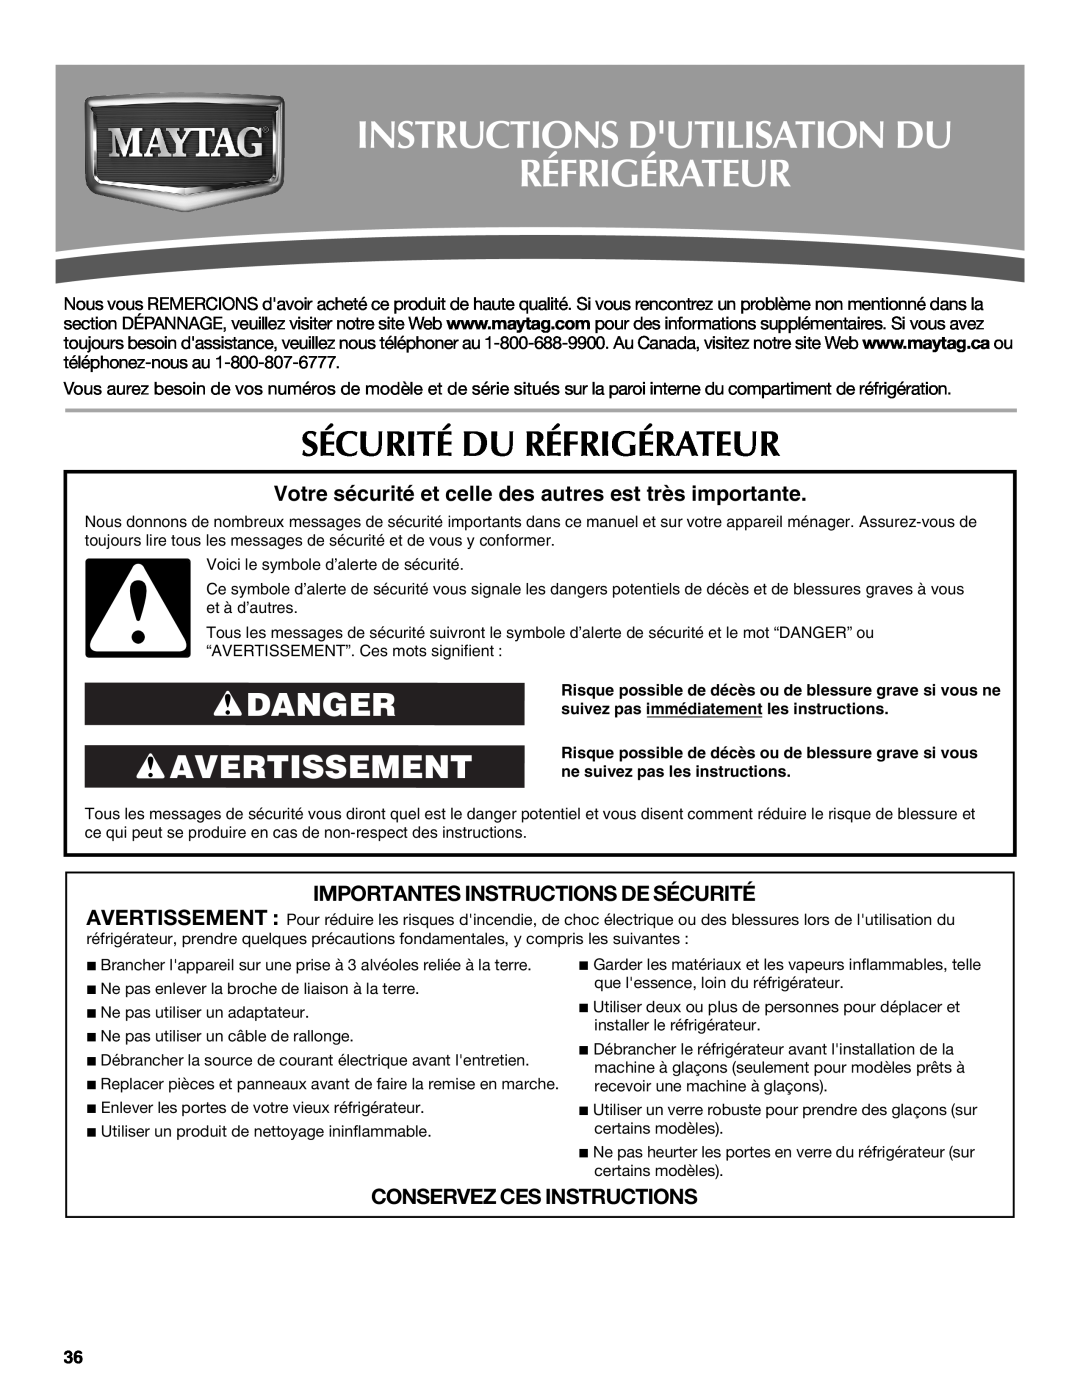 Maytag W10321475A Instructions Dutilisation Du Réfrigérateur, Sécurité Du Réfrigérateur, Danger Avertissement 